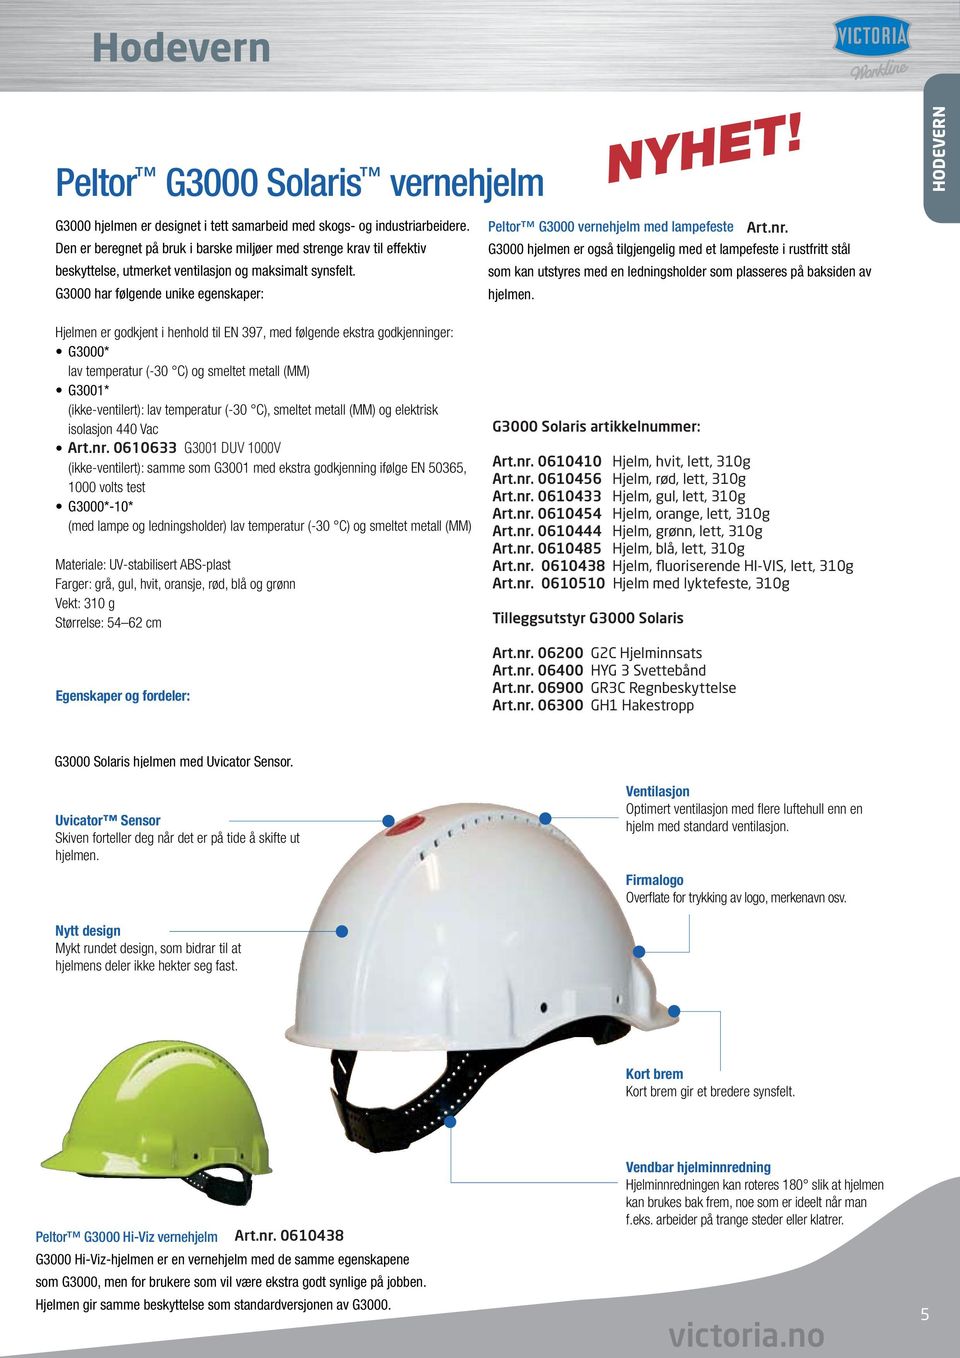 G3000 har følgende unike egenskaper: G3000 hjelmen er også tilgjengelig med et lampefeste i rustfritt stål som kan utstyres med en ledningsholder som plasseres på baksiden av hjelmen.